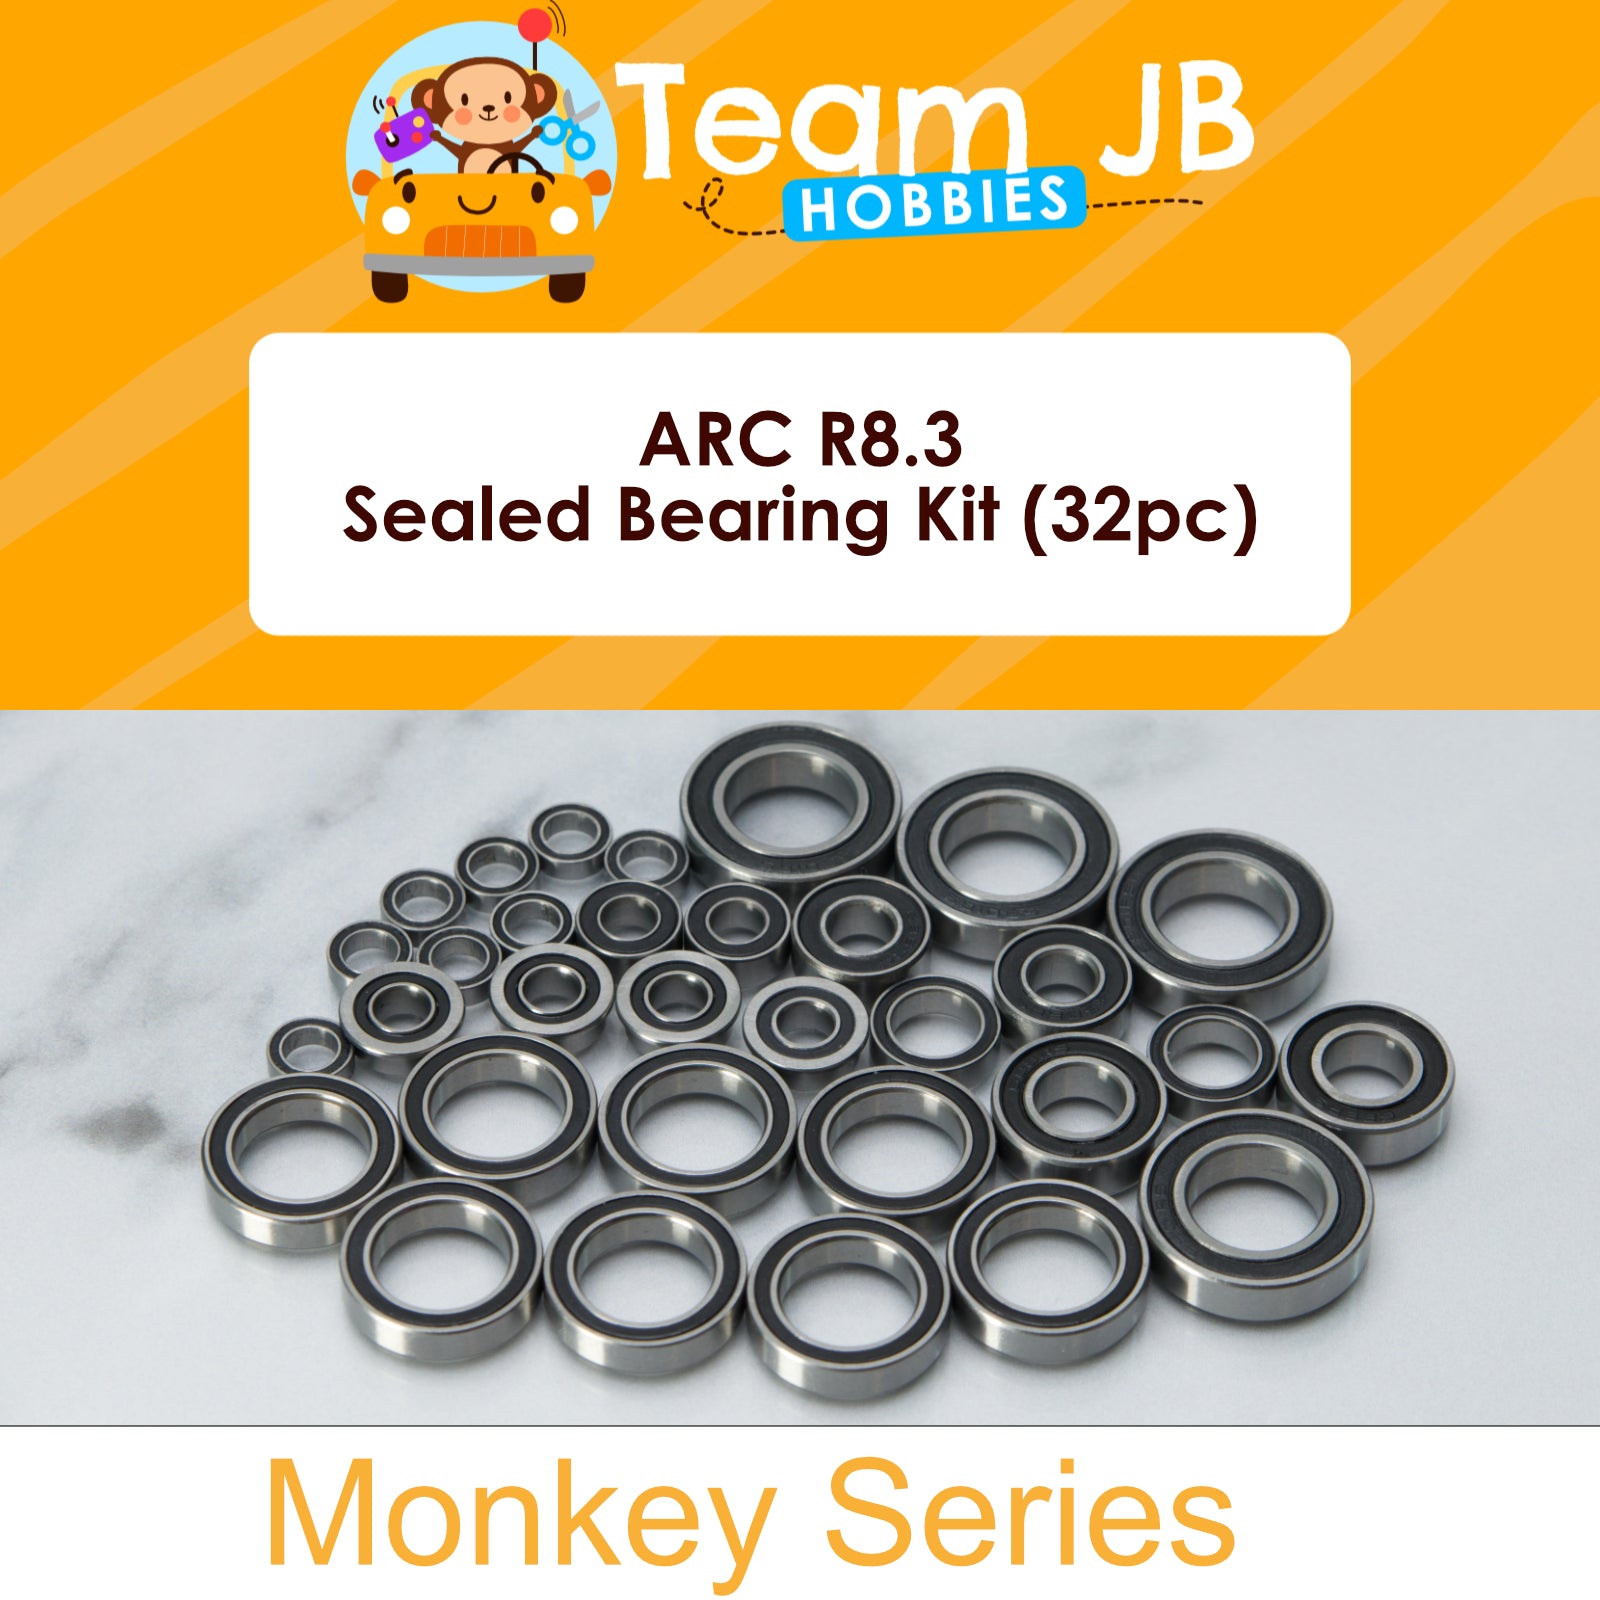 ARC R8.3 - Sealed Bearing Kit